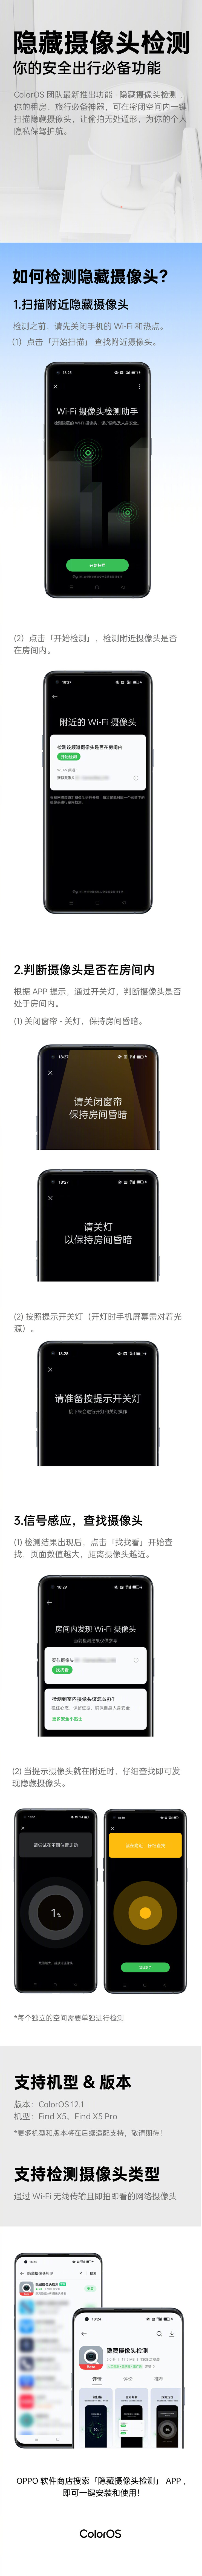 Infographie sur la nouvelle fonctionnalité de détection des caméras cachées d'OPPO. (Source : OPPO via Weibo)